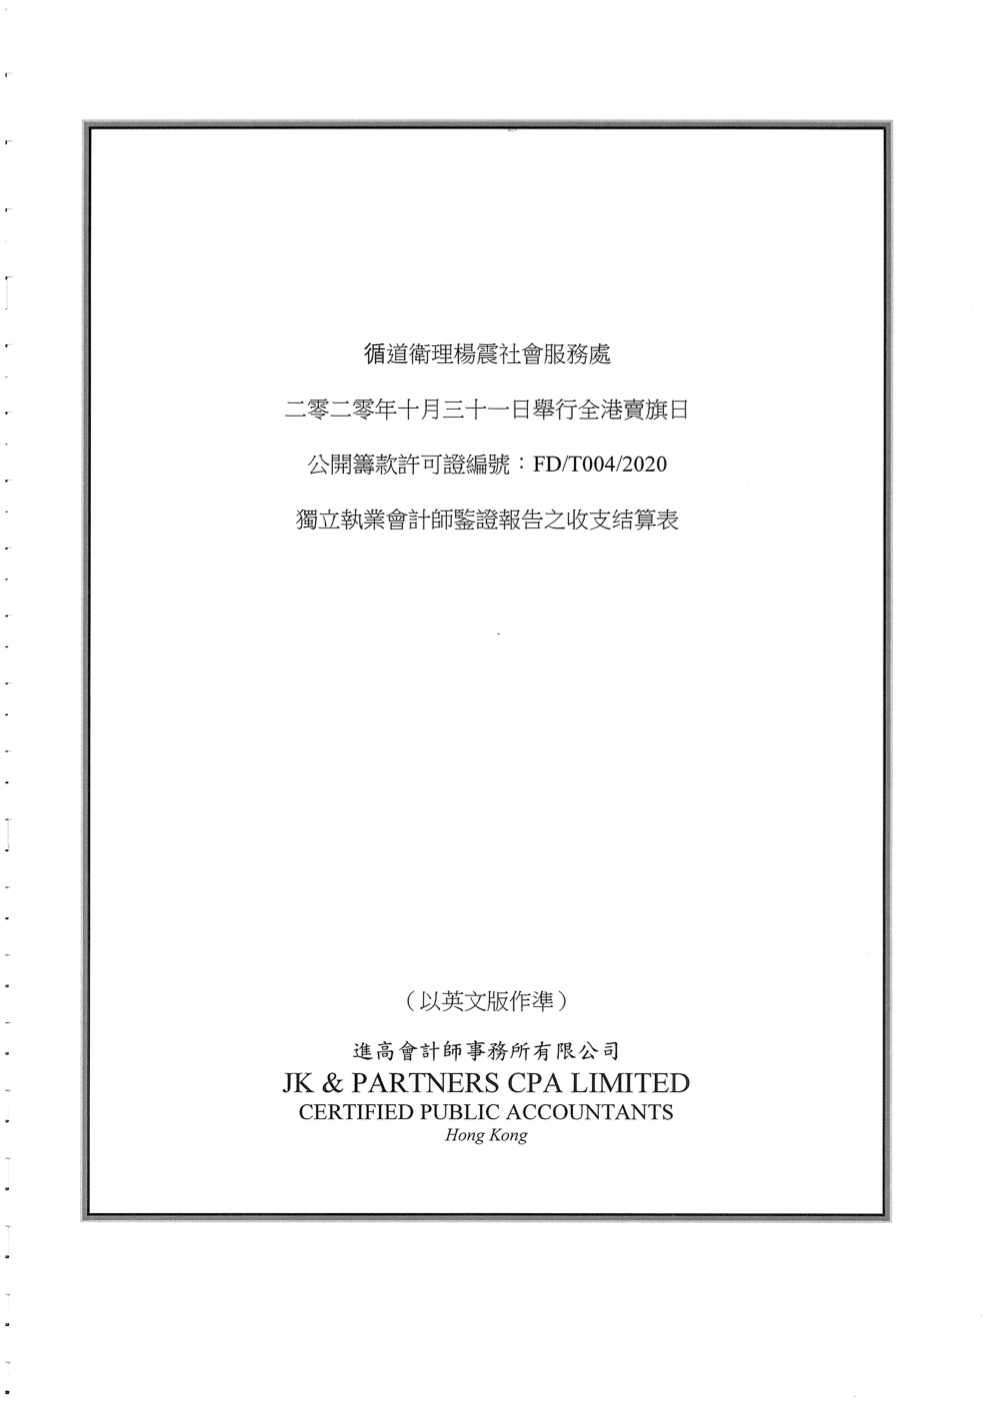 2020年10月31日賣旗日審計報告 (中文版)